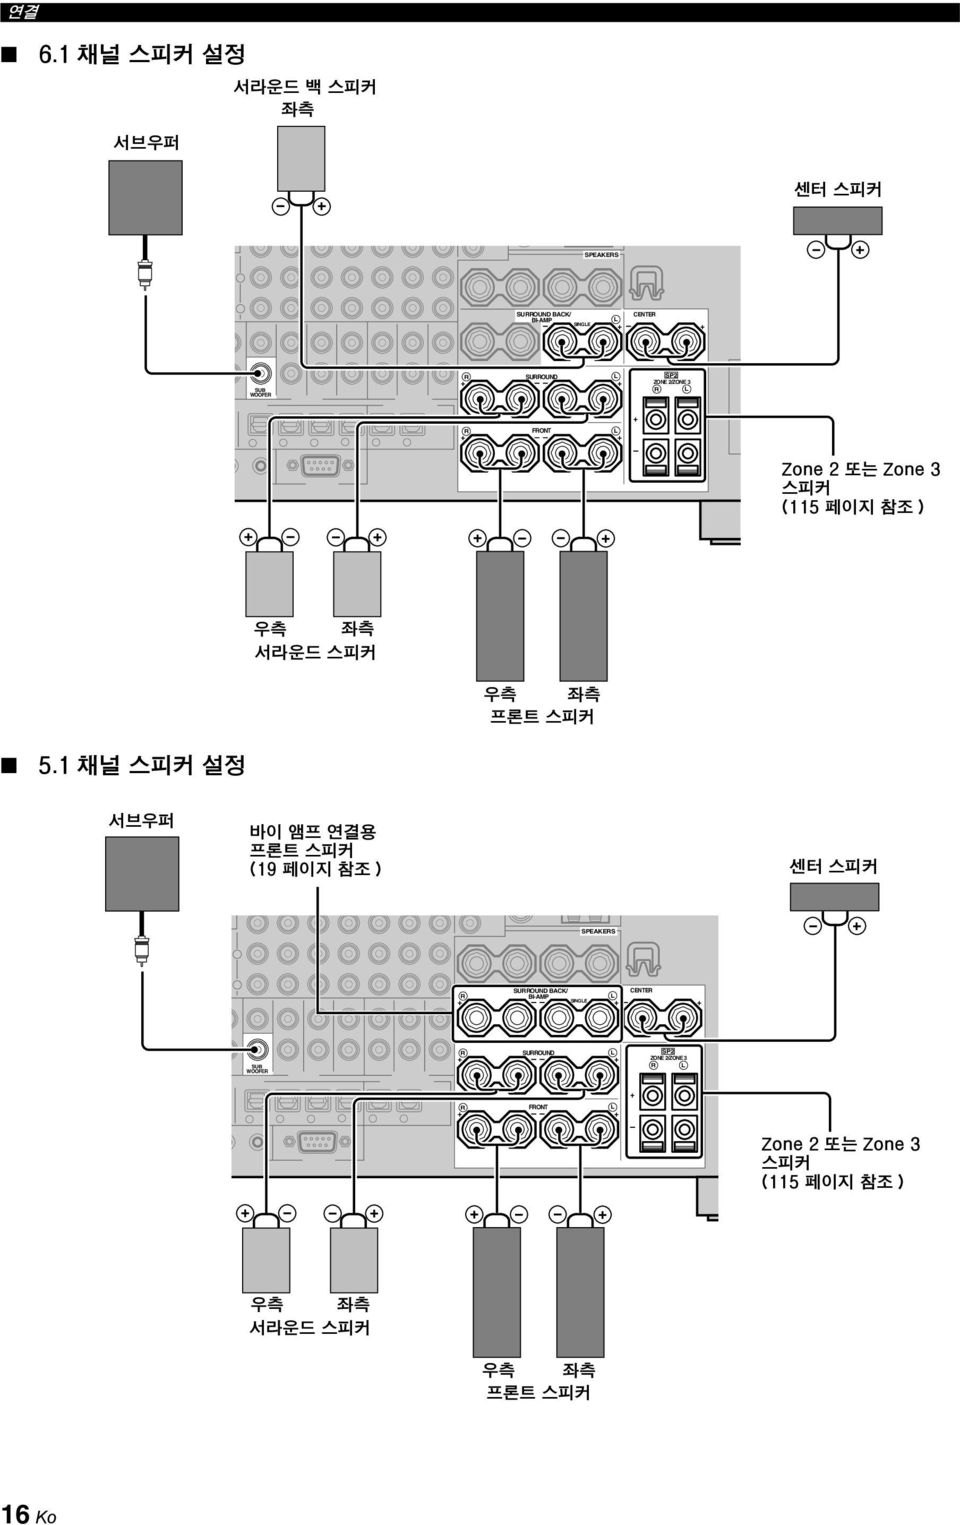 1 채널 스피커 설정 서브우퍼 바이 앰프 연결용 프론트 스피커 (19 페이지 참조 ) 센터 스피커 SPEAKERS SURROUND BACK/ CENTER R BI-AMP L SINGLE + + + SUB